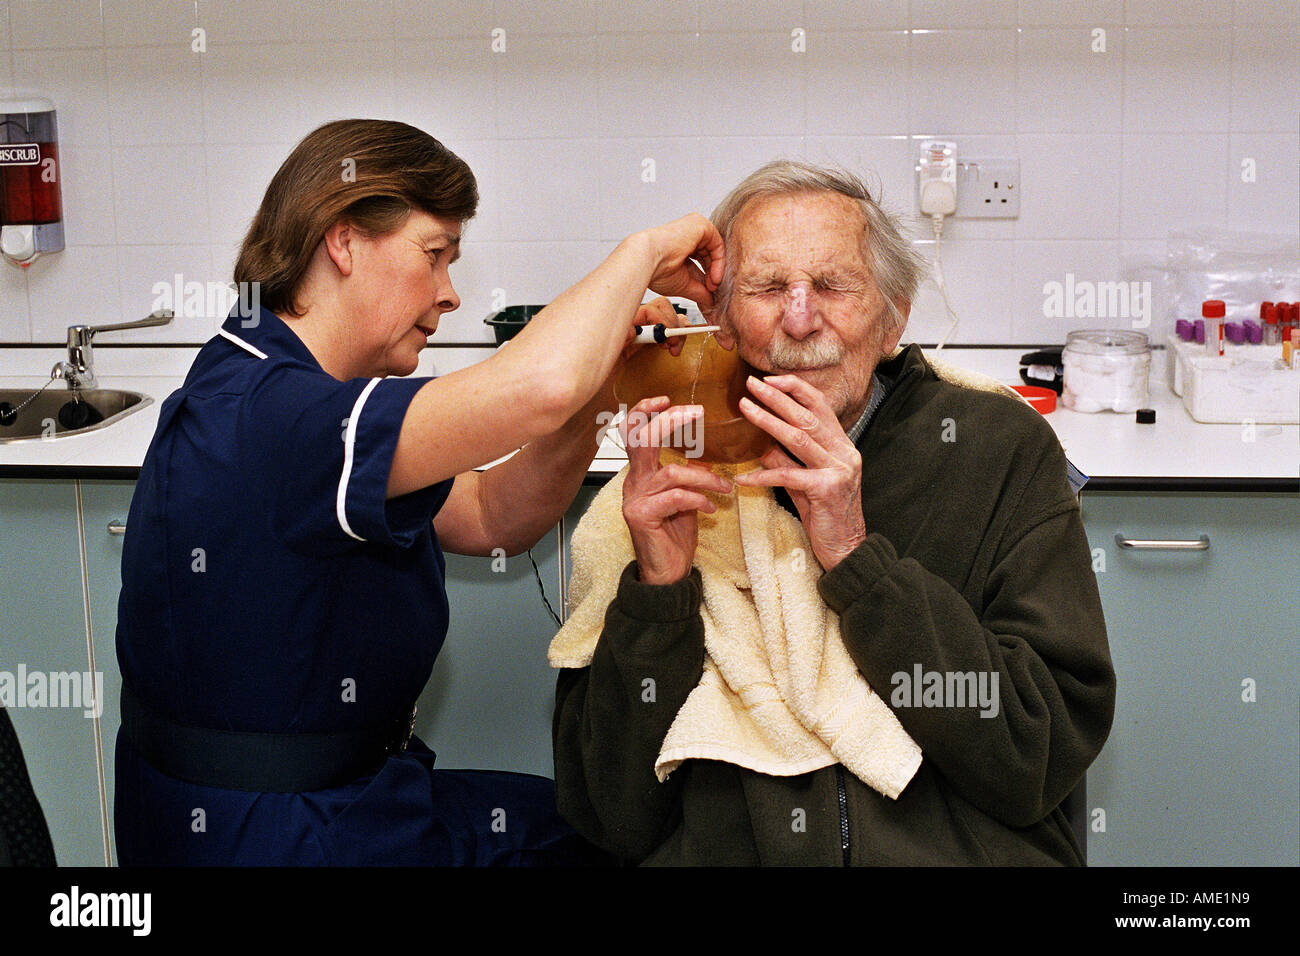 Un médecin injecte de l'eau dans l'oreille d'un patient. Ce qui en